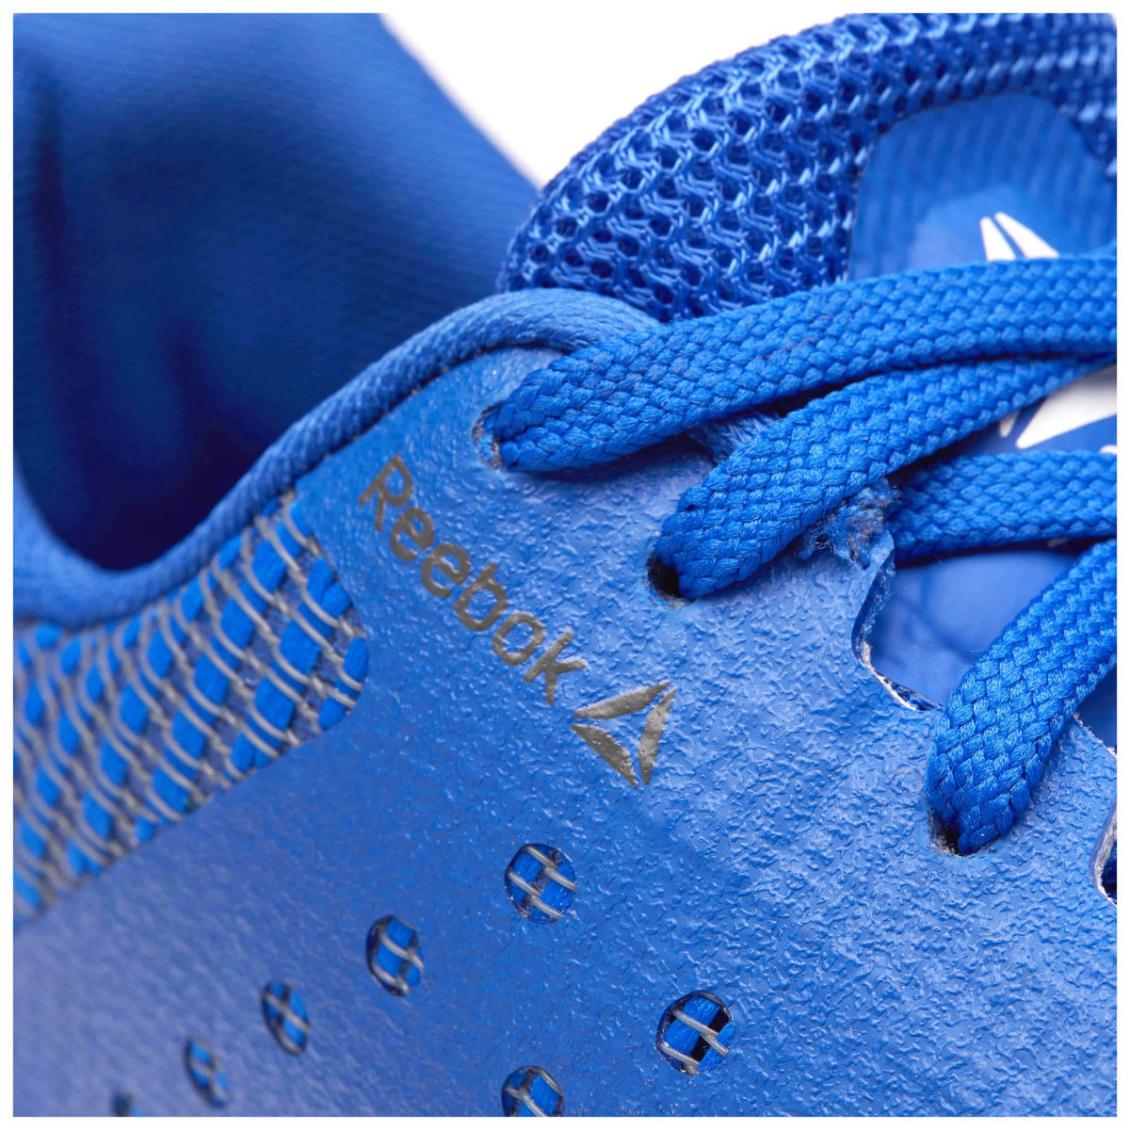 Reebok Mens Crossfit Nano 7 Weave Cross-Training Shoe Blue